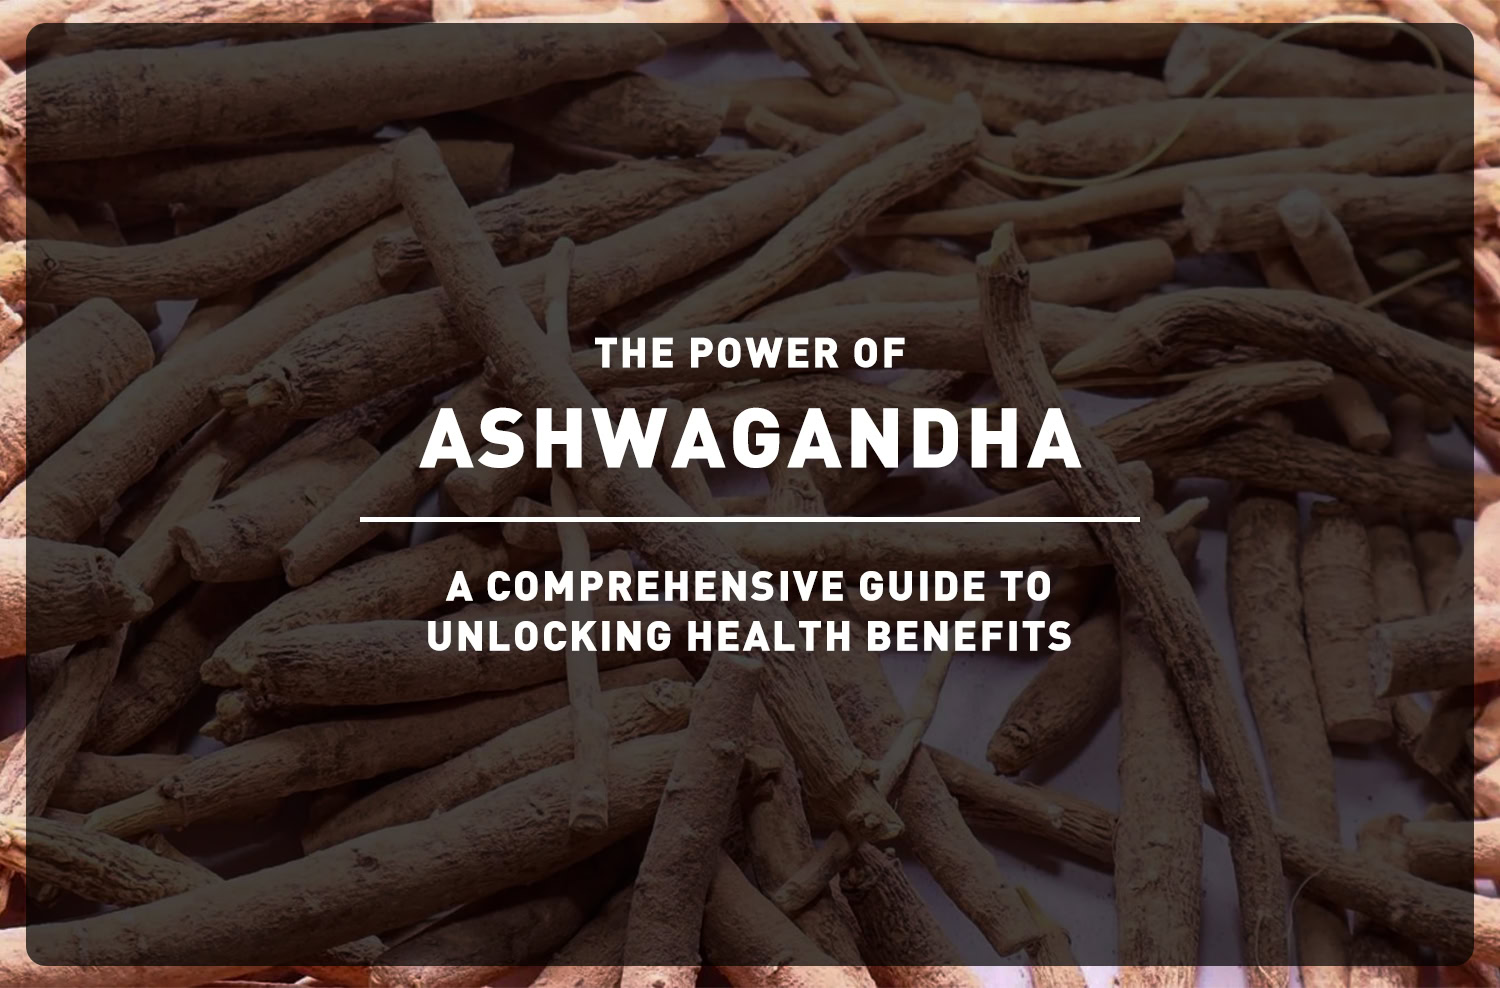 The Power of Ashwagandha